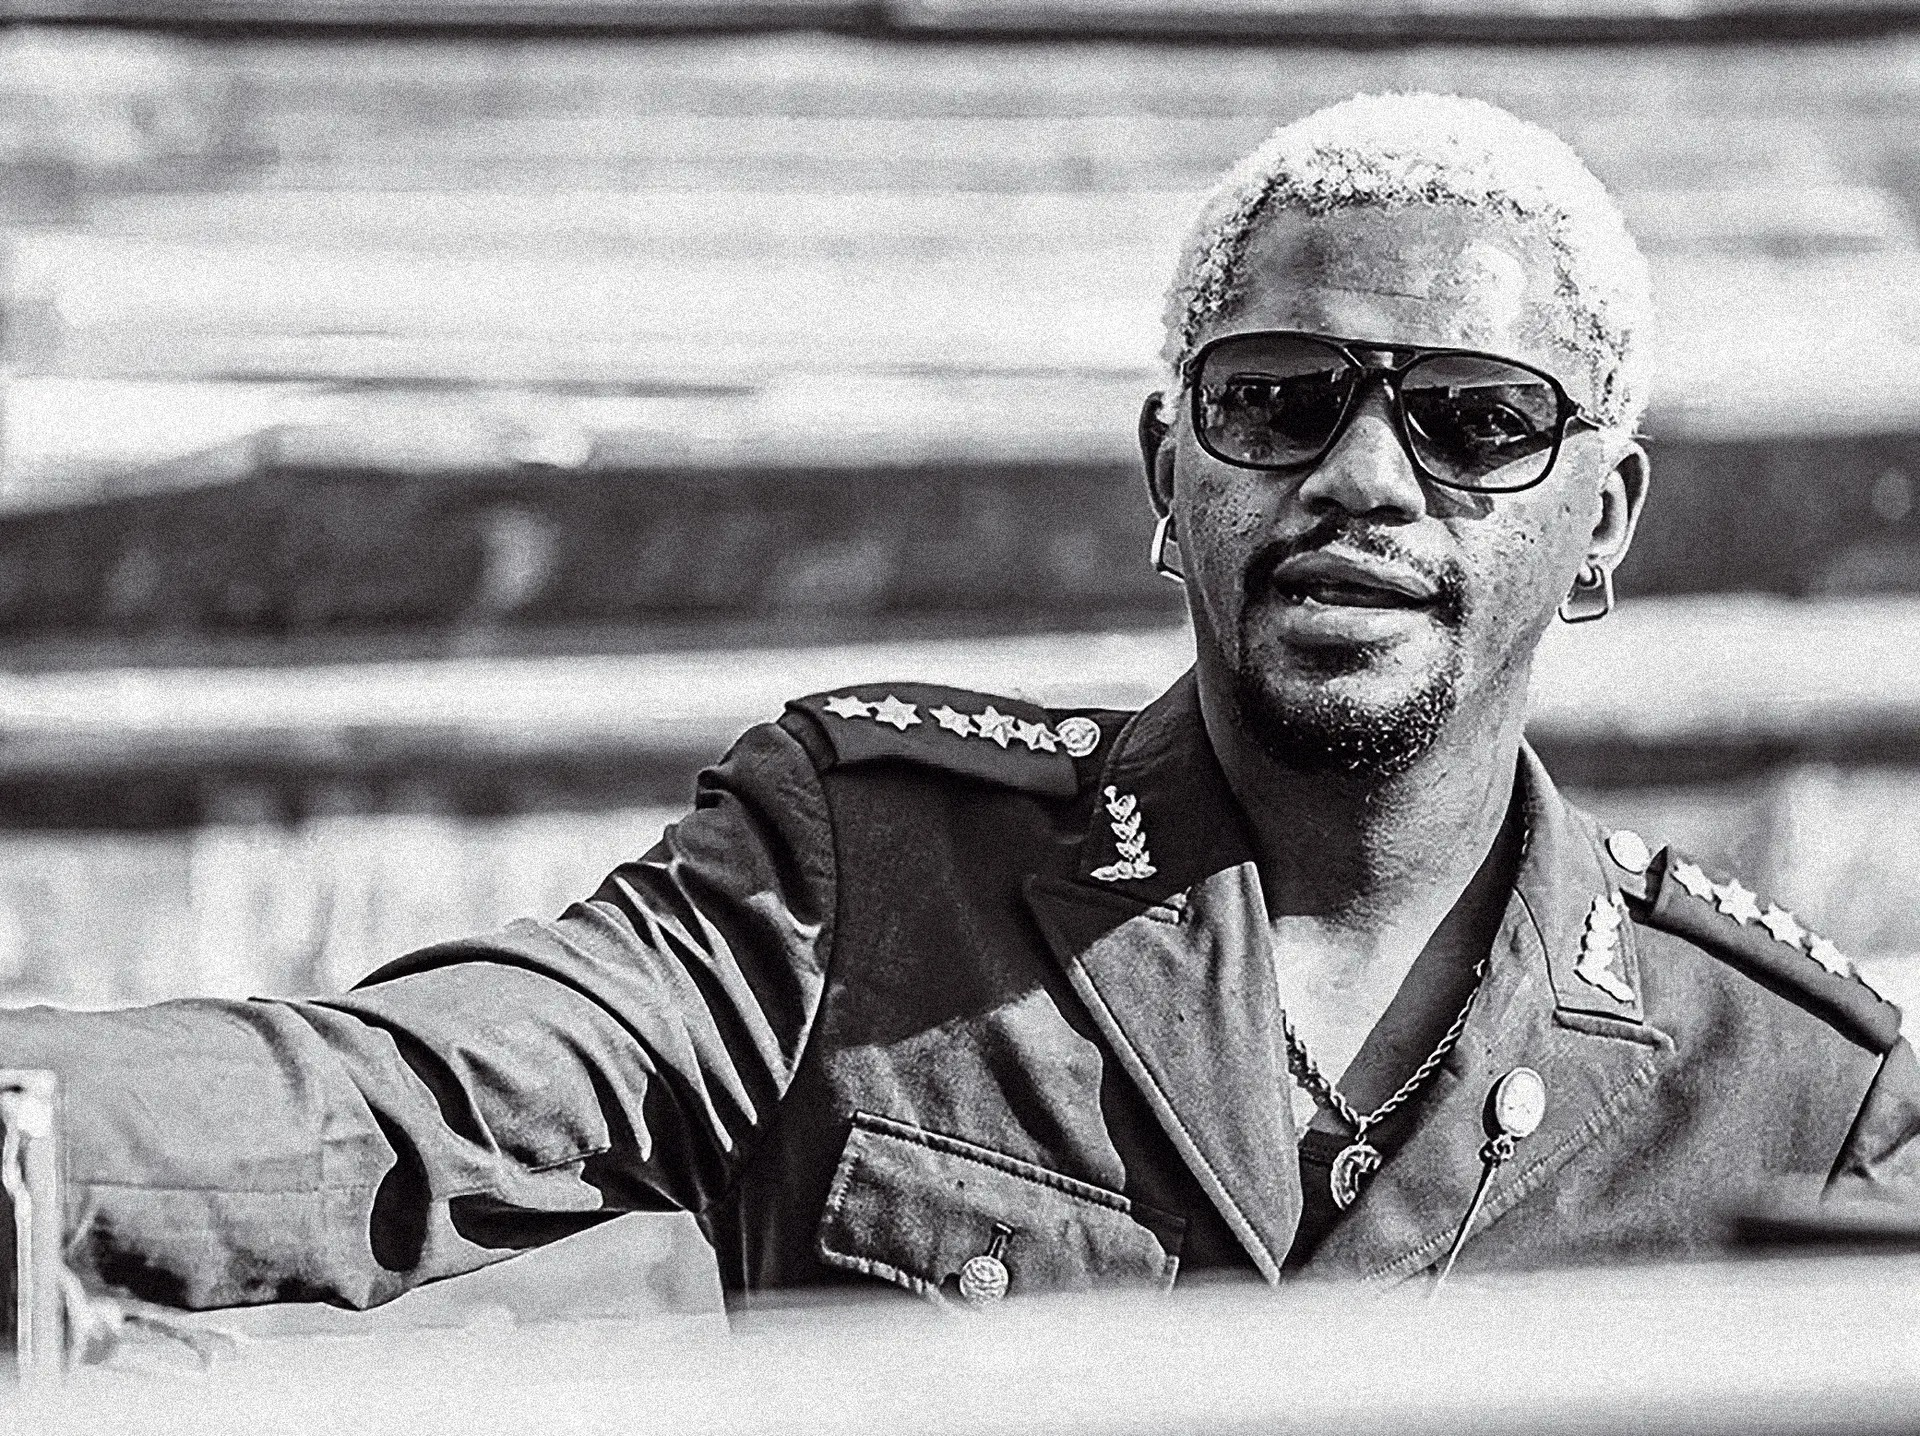 Nagrelha, o “Estado-Maior do Kuduro” angolano cuja morte causou tumultos (1986-2022)